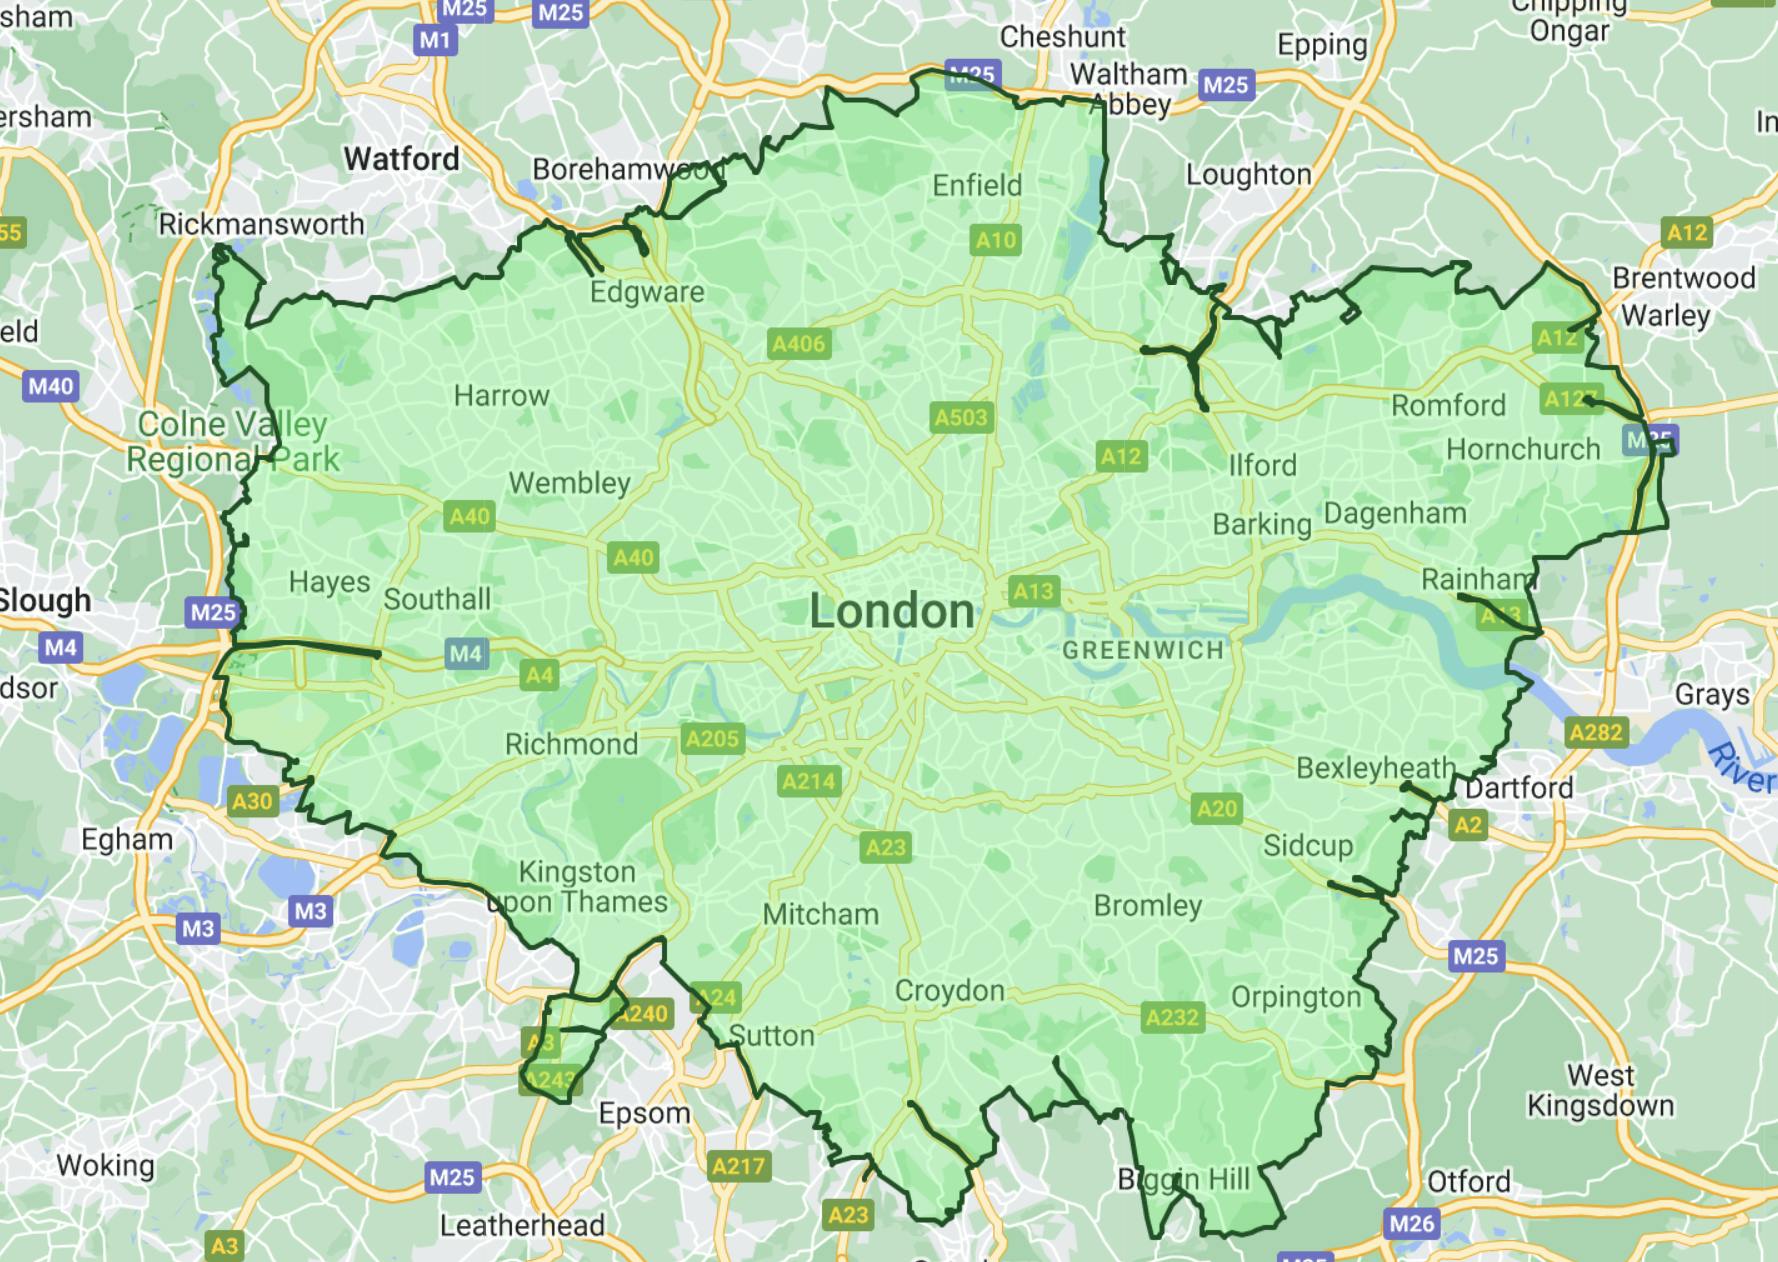 London Low Emission Zone (LEZ) map